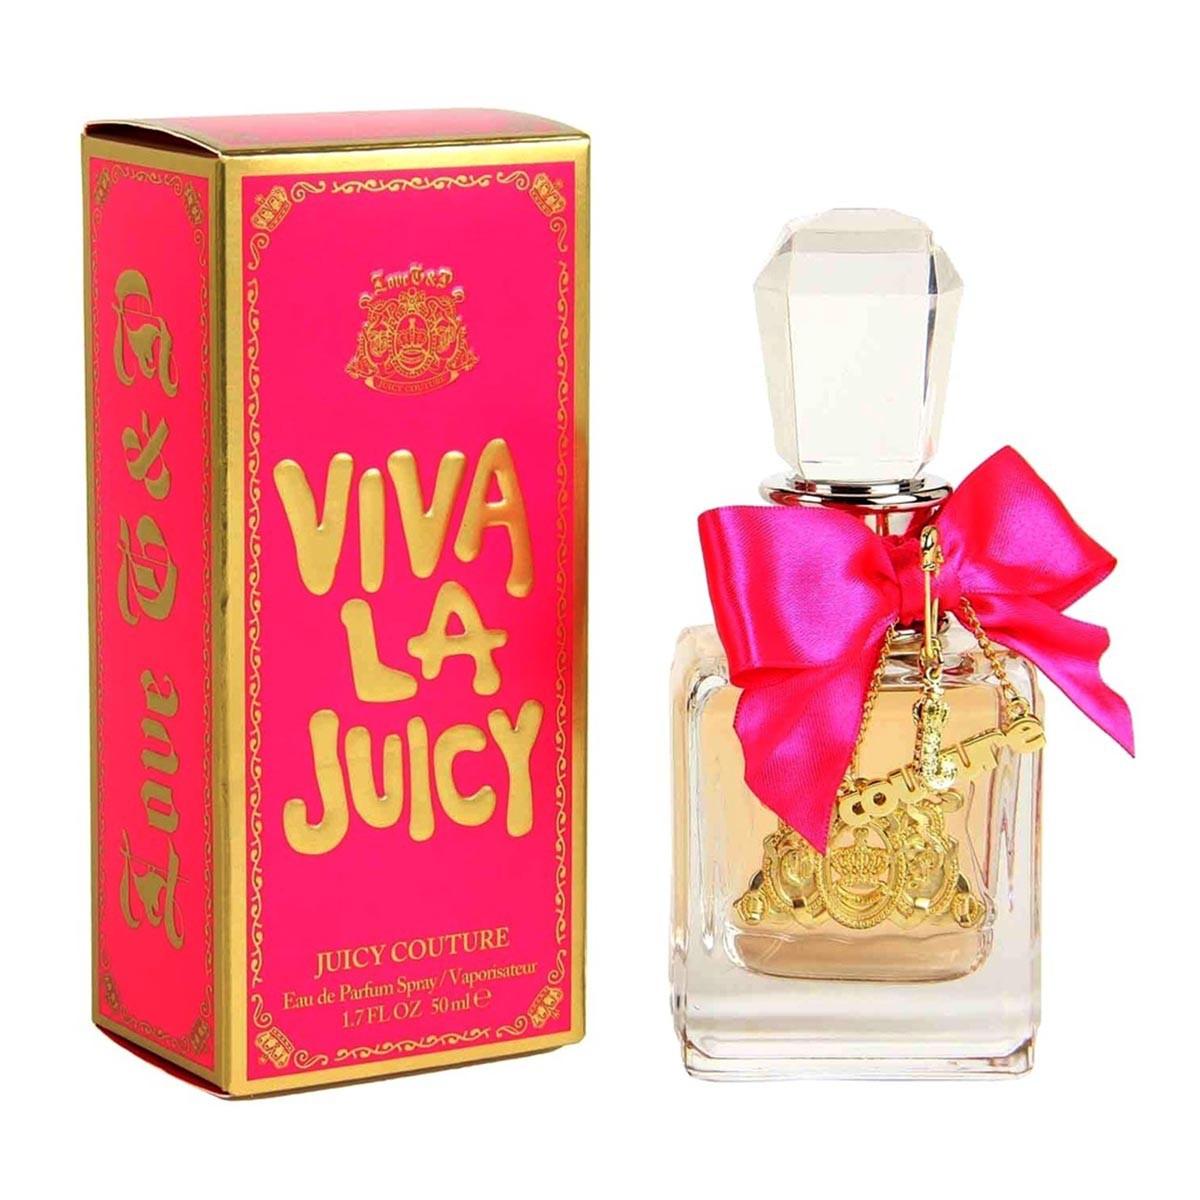 juicy-couture-profumo-viva-la-juicy-eau-de-parfum-50ml